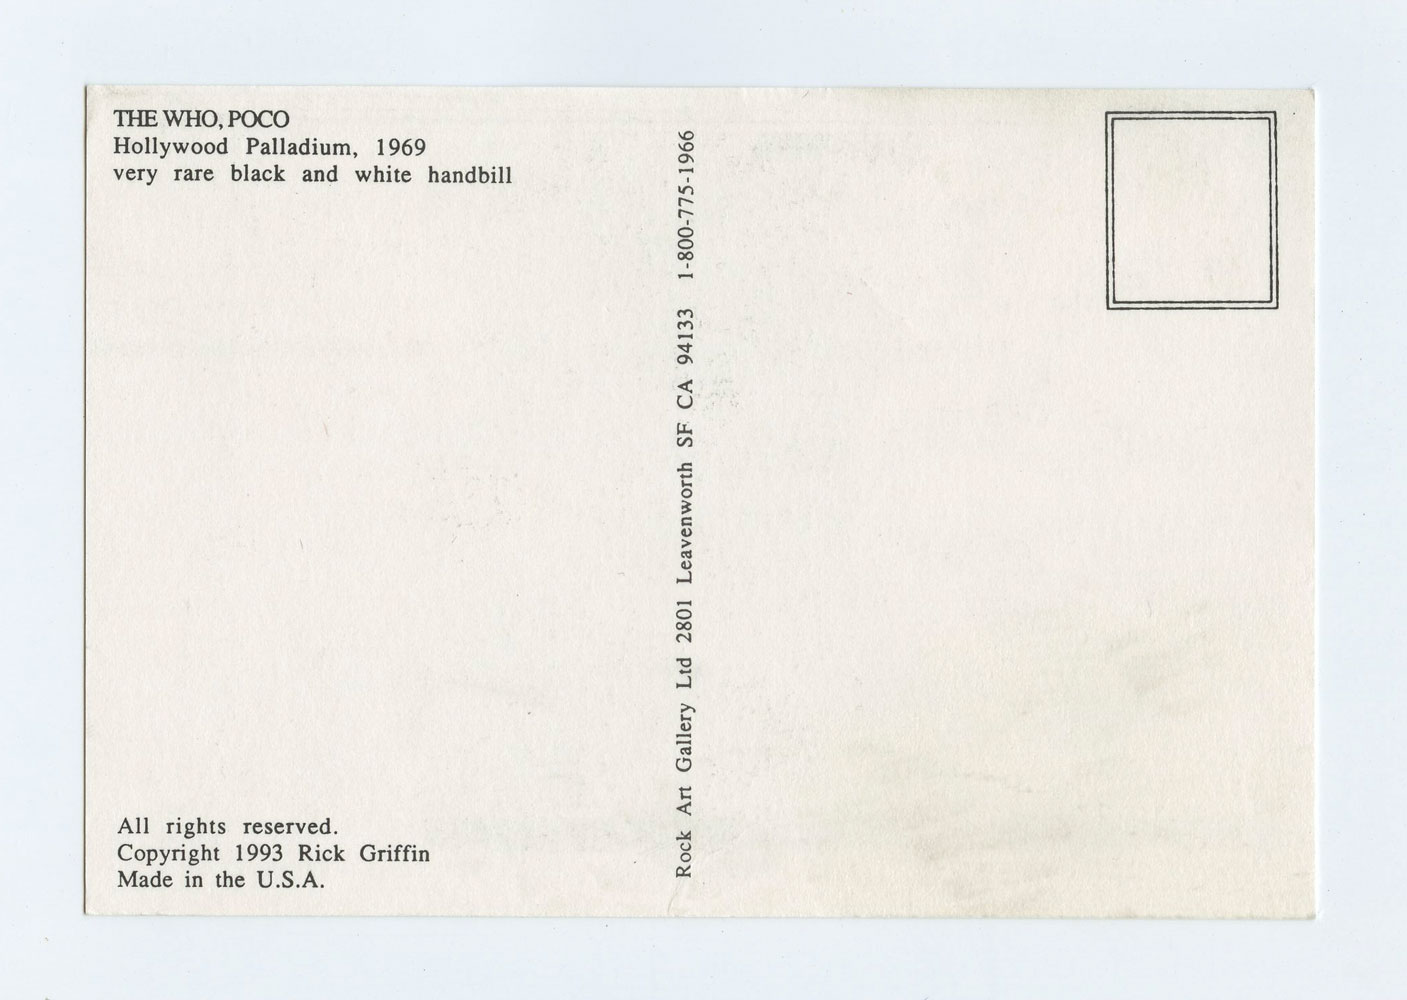 Rick Griffin Postcard AOR3.65 R1993 B/W the Who Poco 1969 Hollywood Palladium